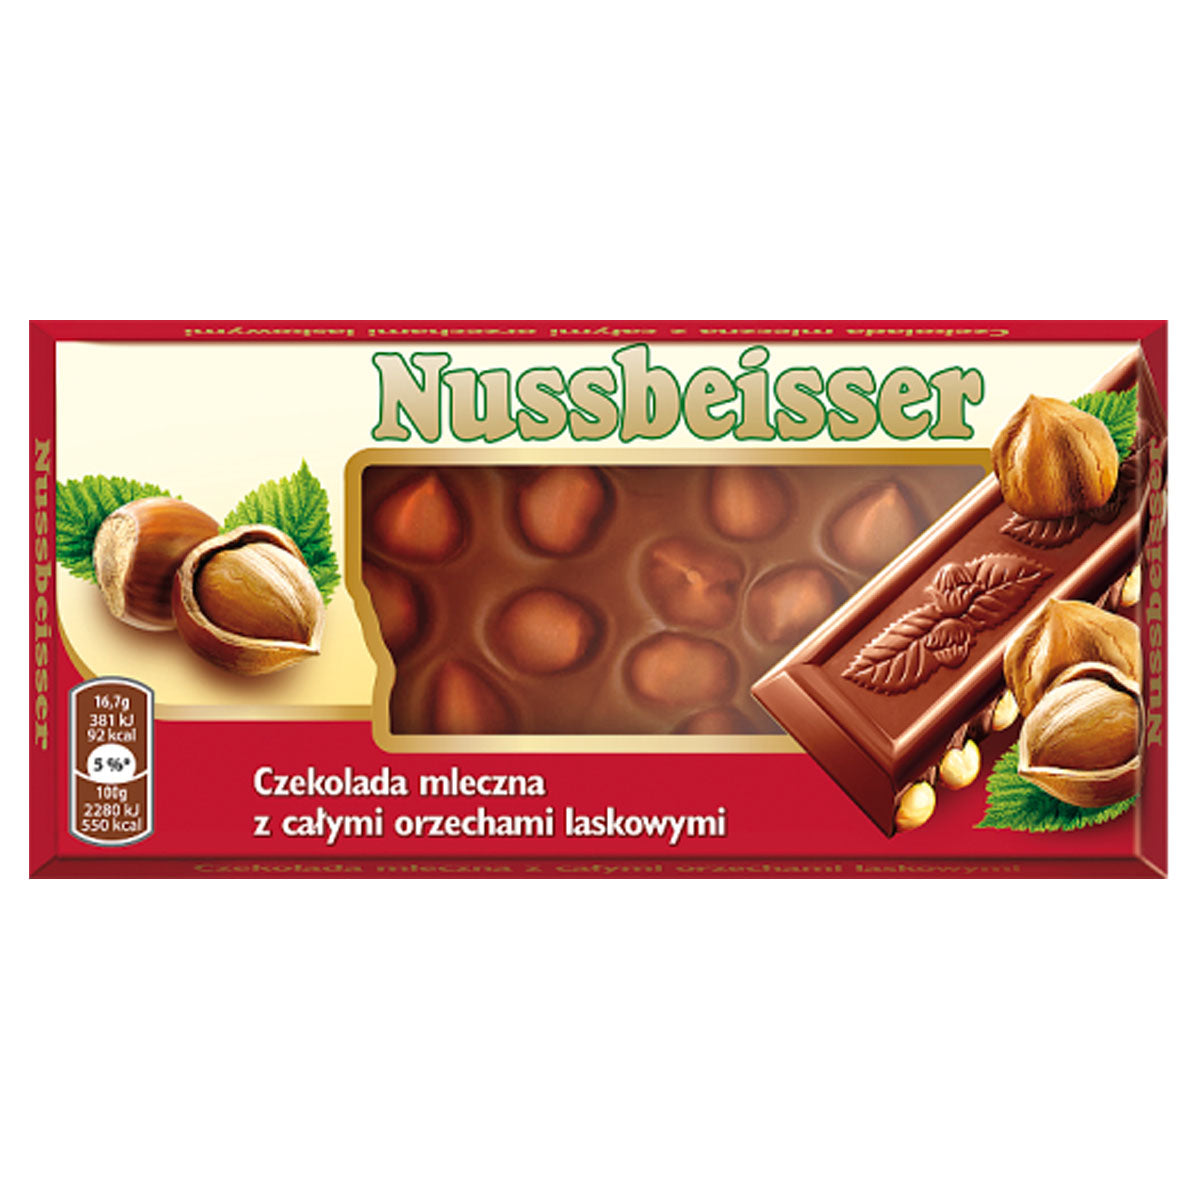 Nussbeisser - Milk Chocolate - 100g - Continental Food Store